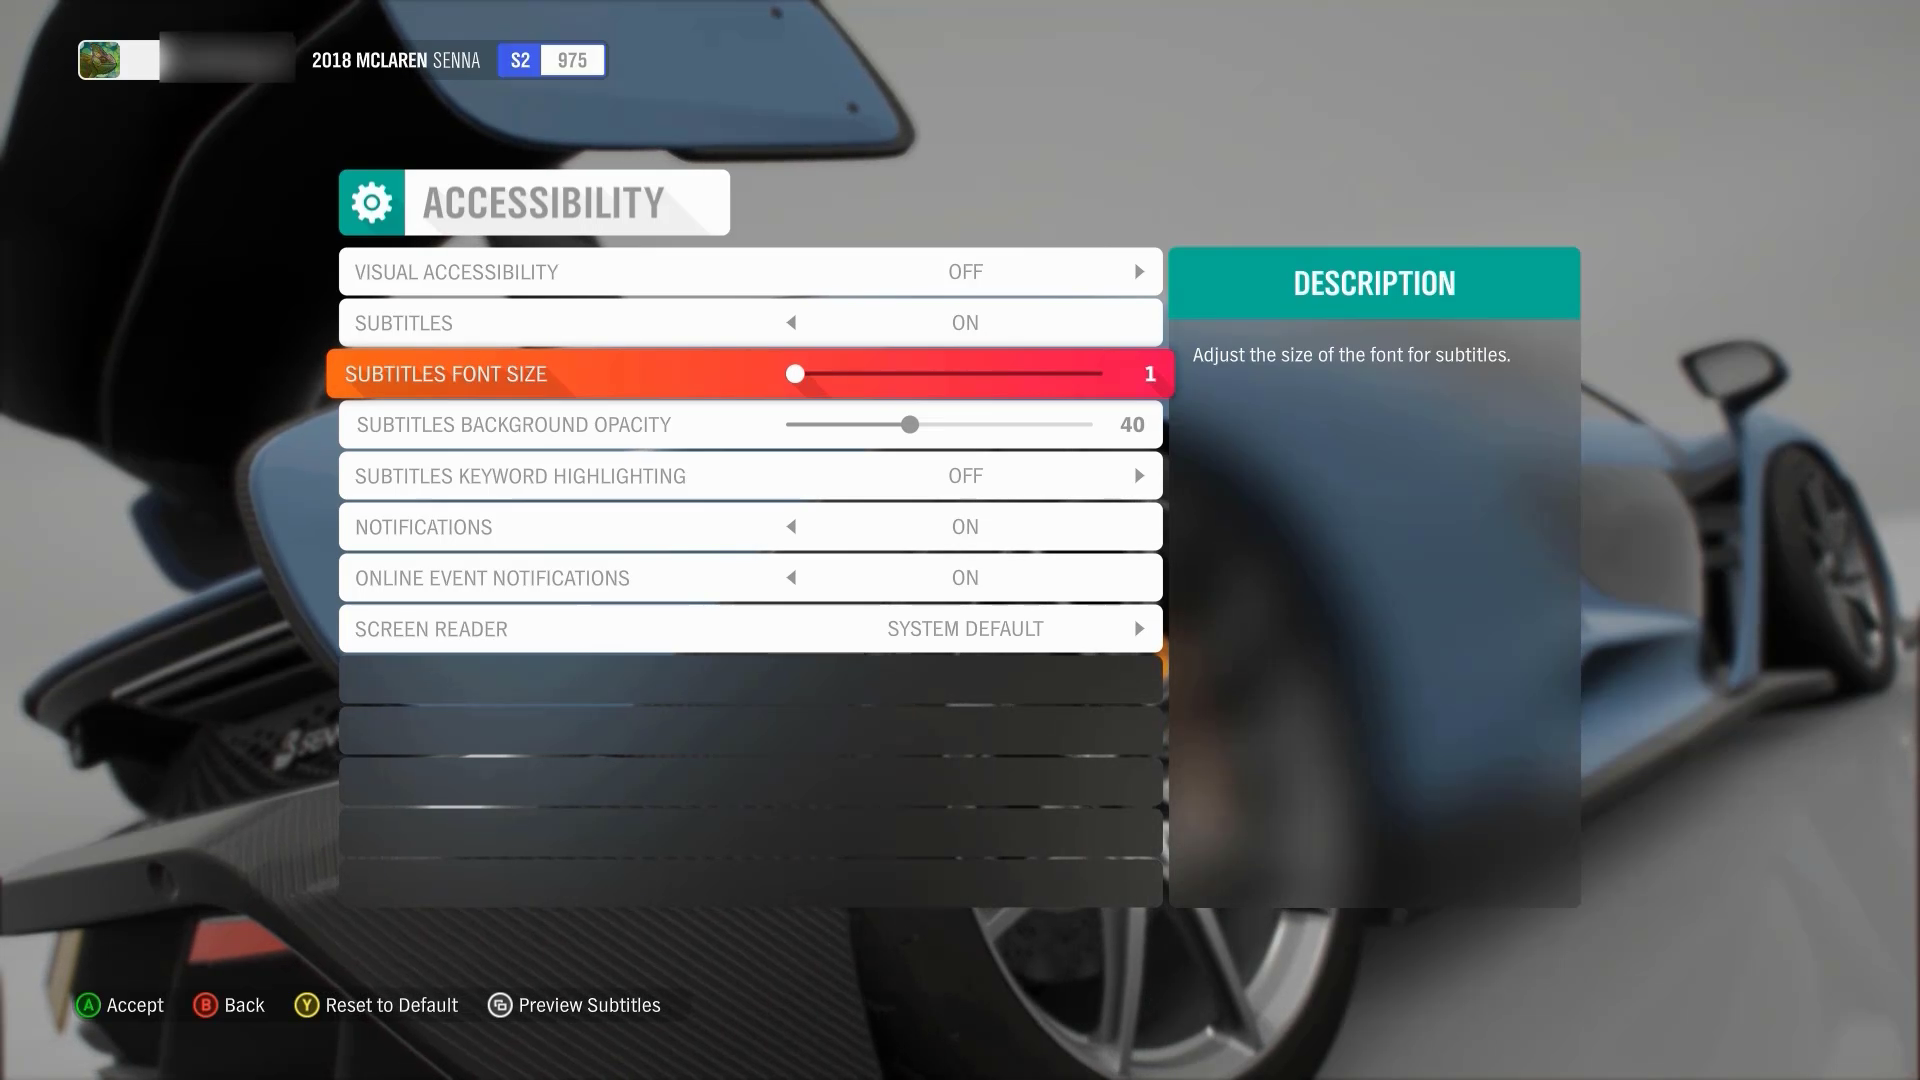 Forza Horizon 4 접근성 설정 메뉴의 스크린샷. 부제목 글꼴 크기 옵션에는 포커스가 있습니다. 현재 슬라이더 값은 1입니다. 